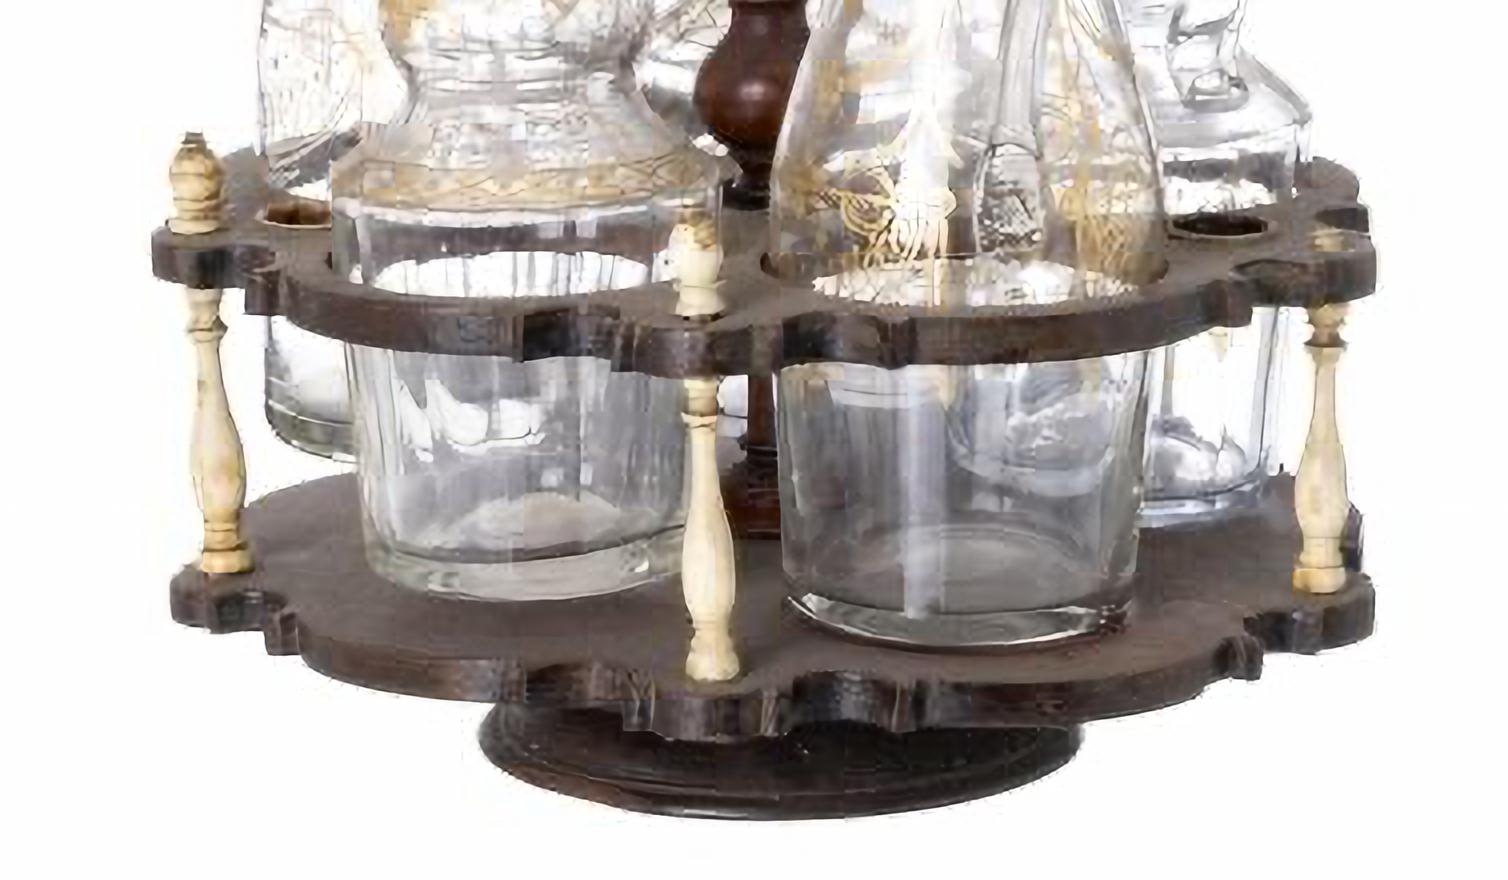 Artisanat portugais du XVIIIe siècle
avec des burettes en verre décorées de 